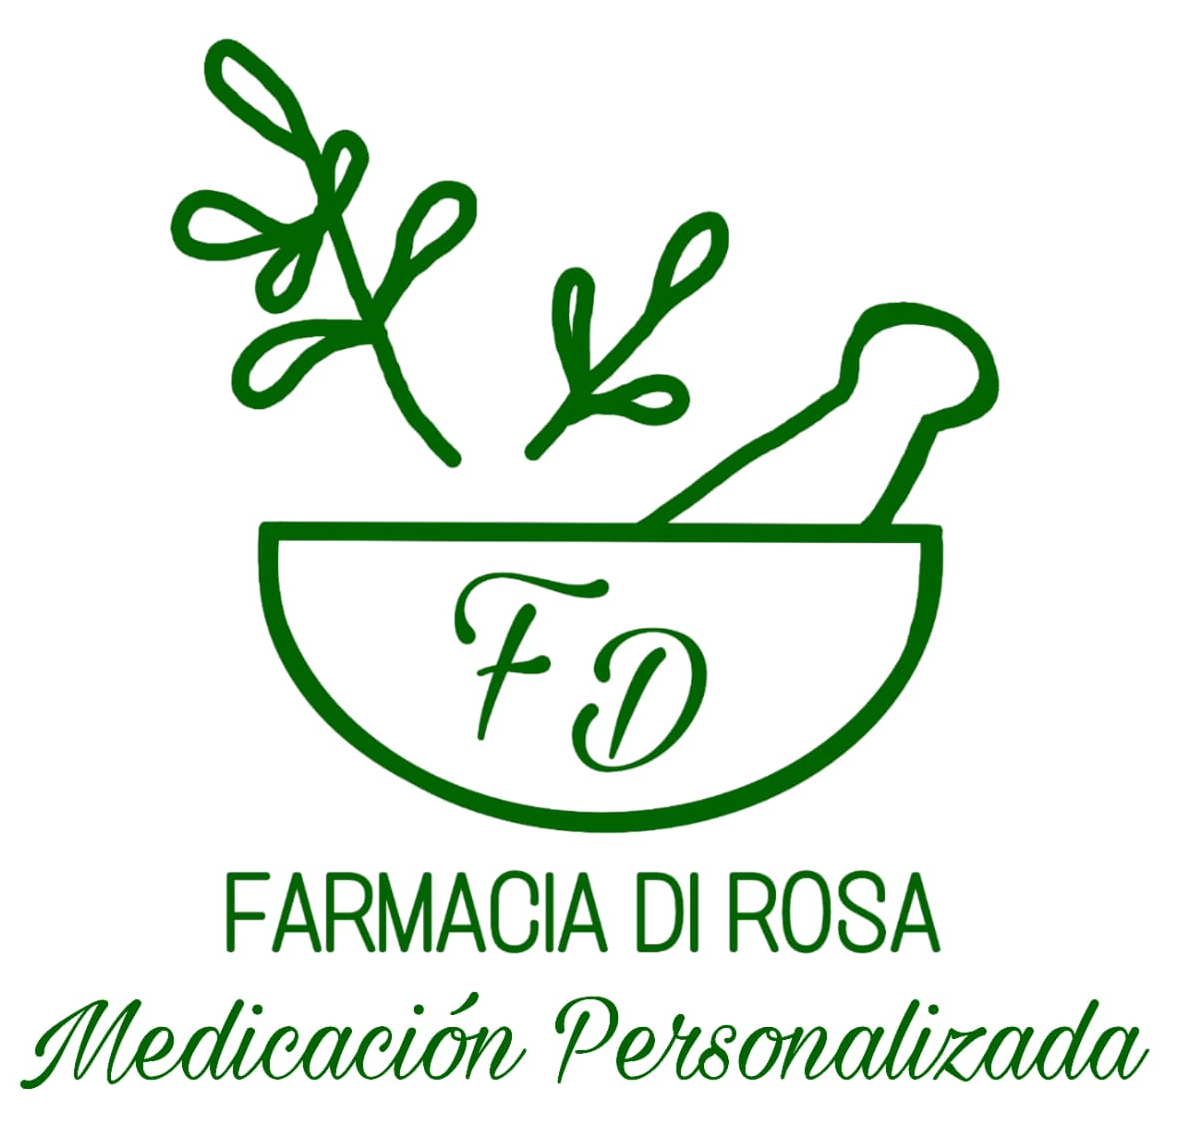 Farmacia Di Rosa, logotipo.